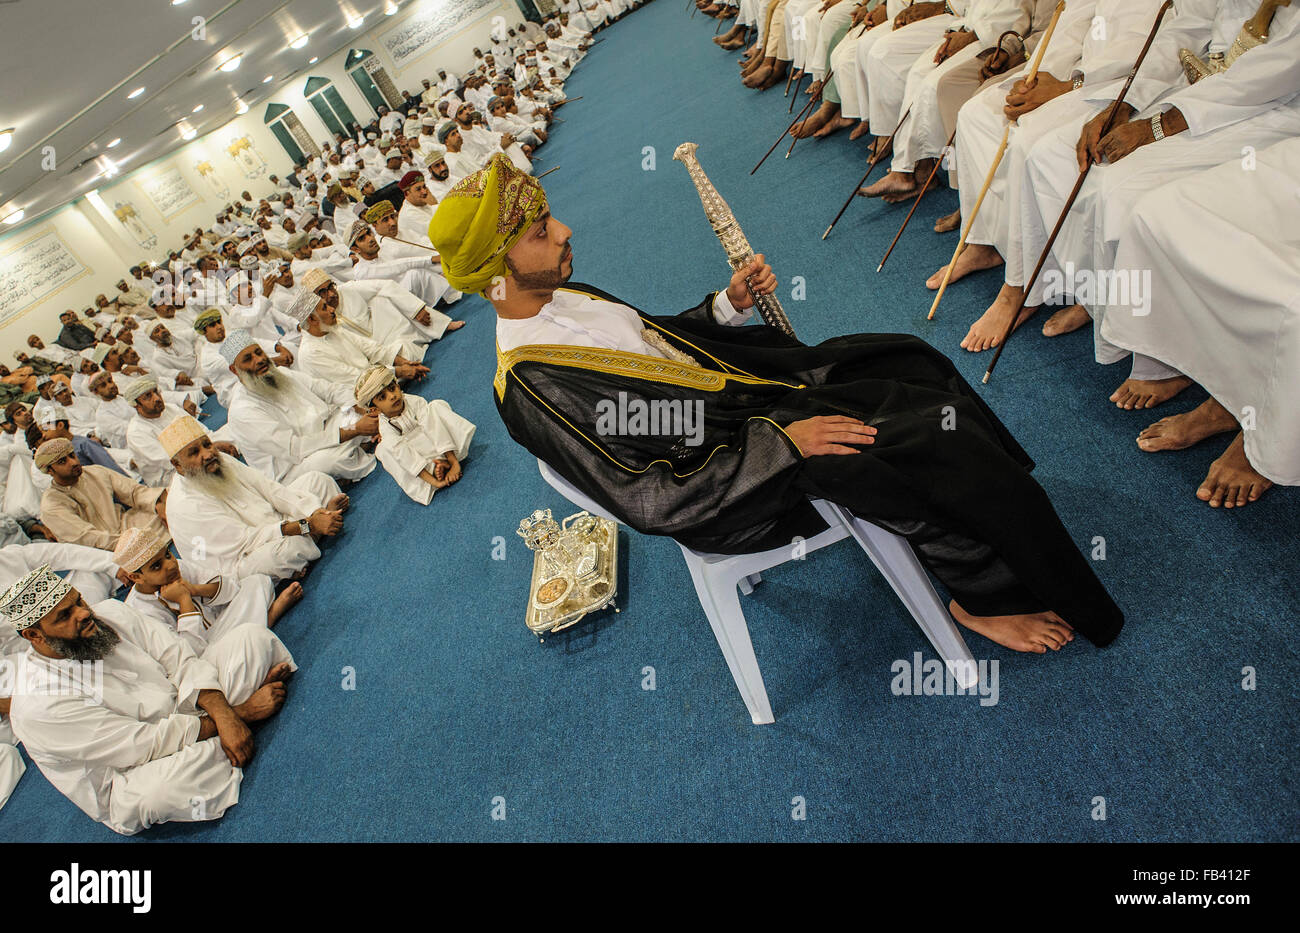 Boda islámica en una mezquita, Muscat, Omán Foto de stock